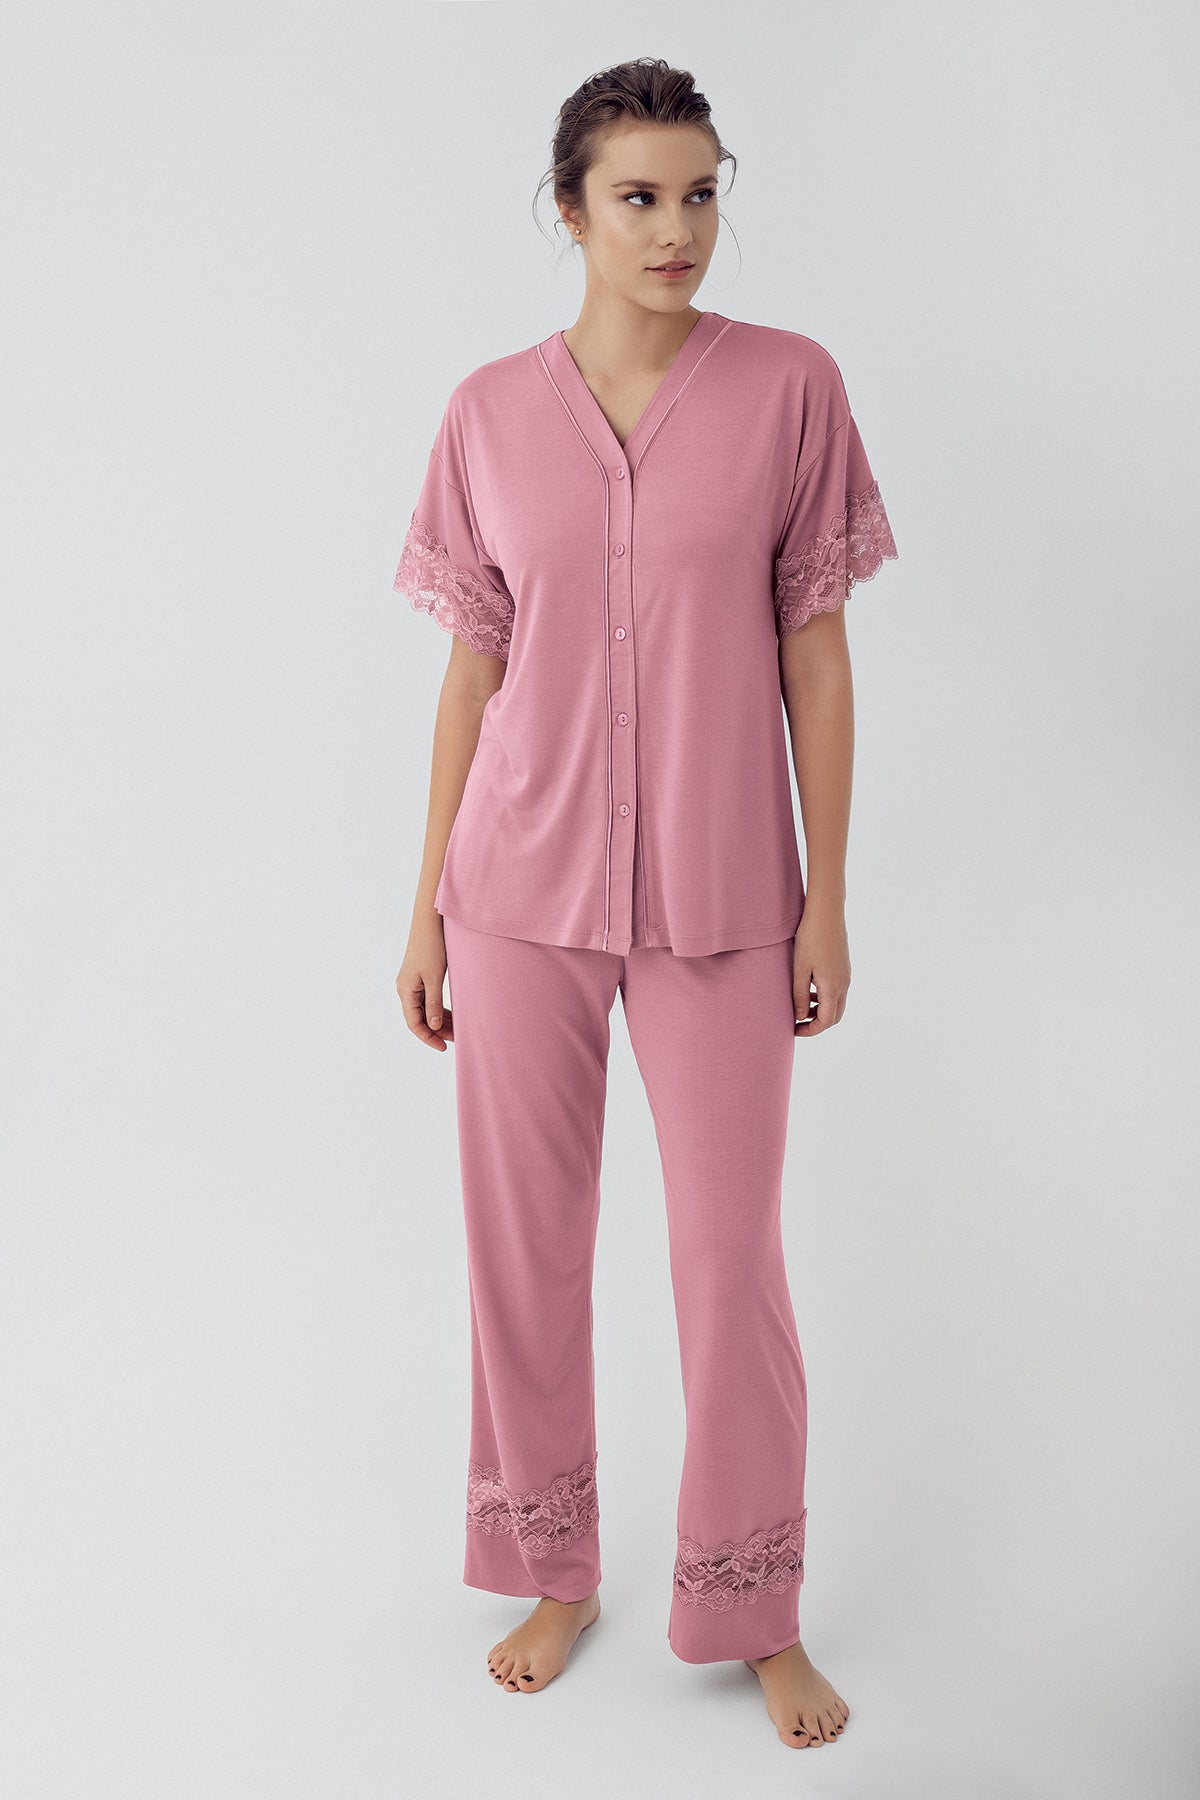 Shopymommy 16211 Lace Sleeve Maternity & Nursing Pajamas Dried Rose